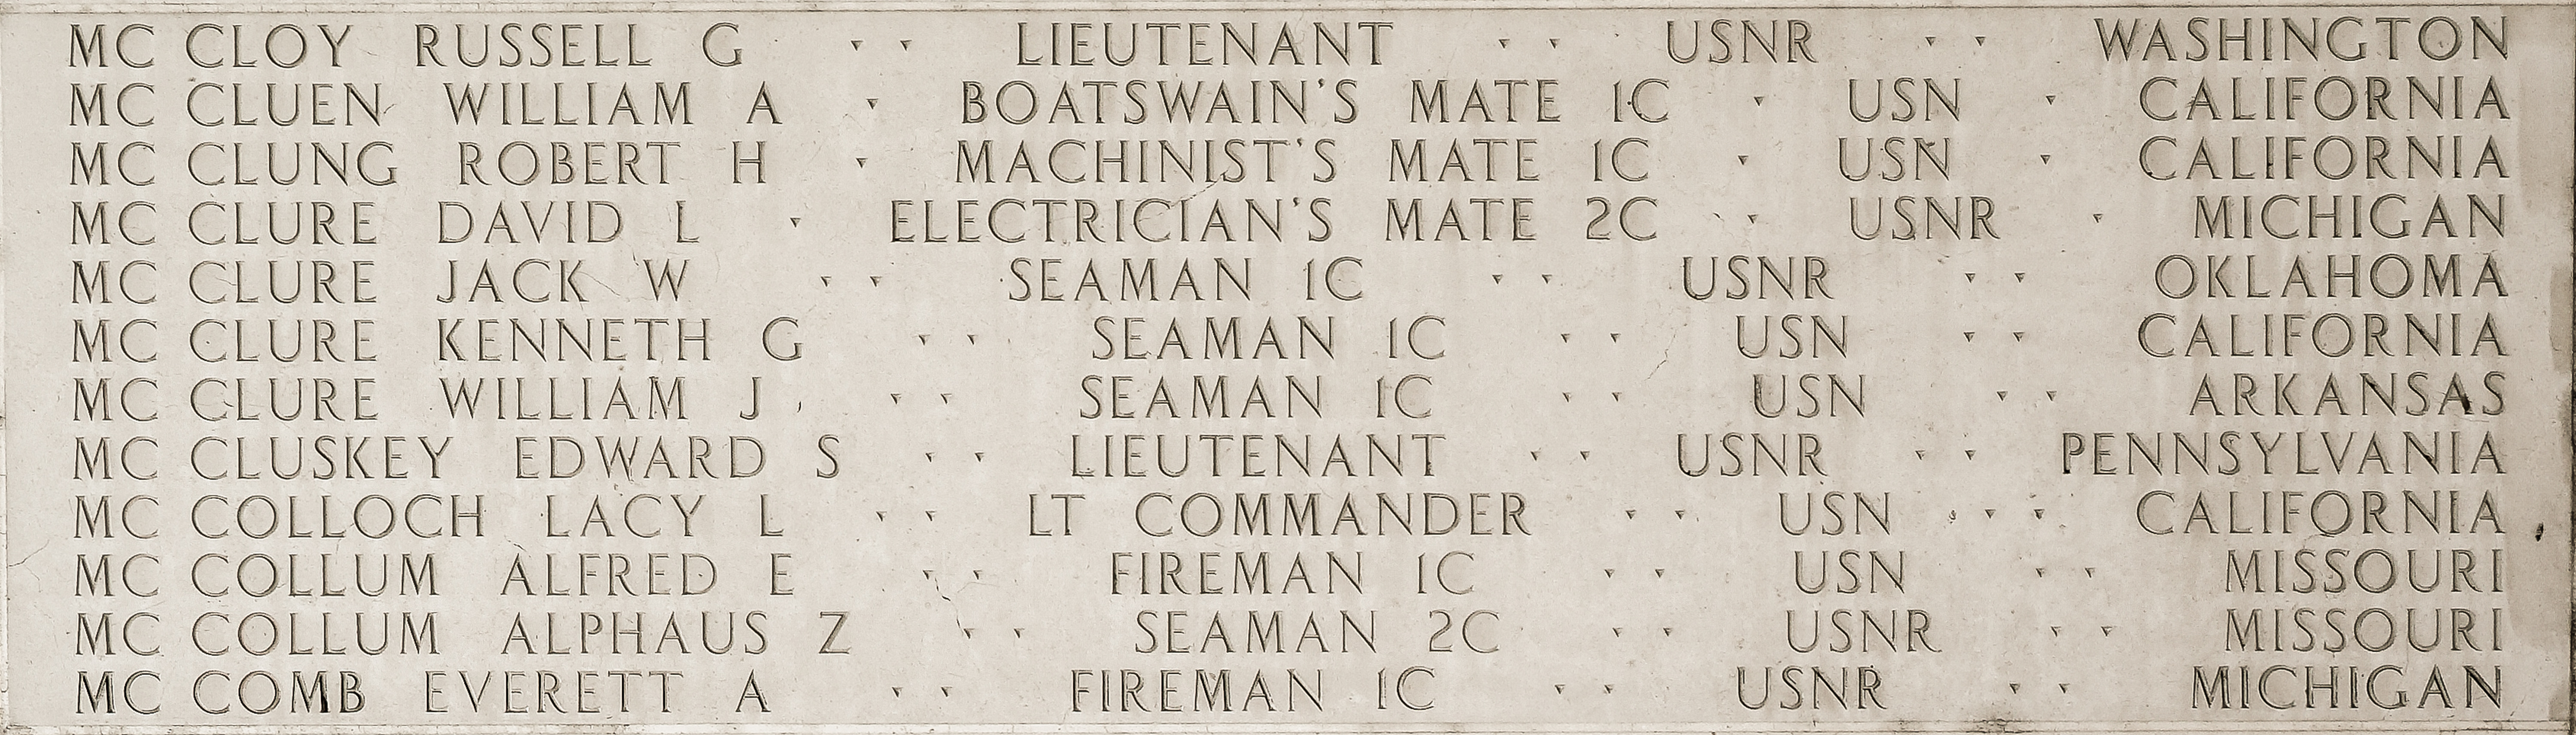 William A. McCluen, Boatswain's Mate First Class